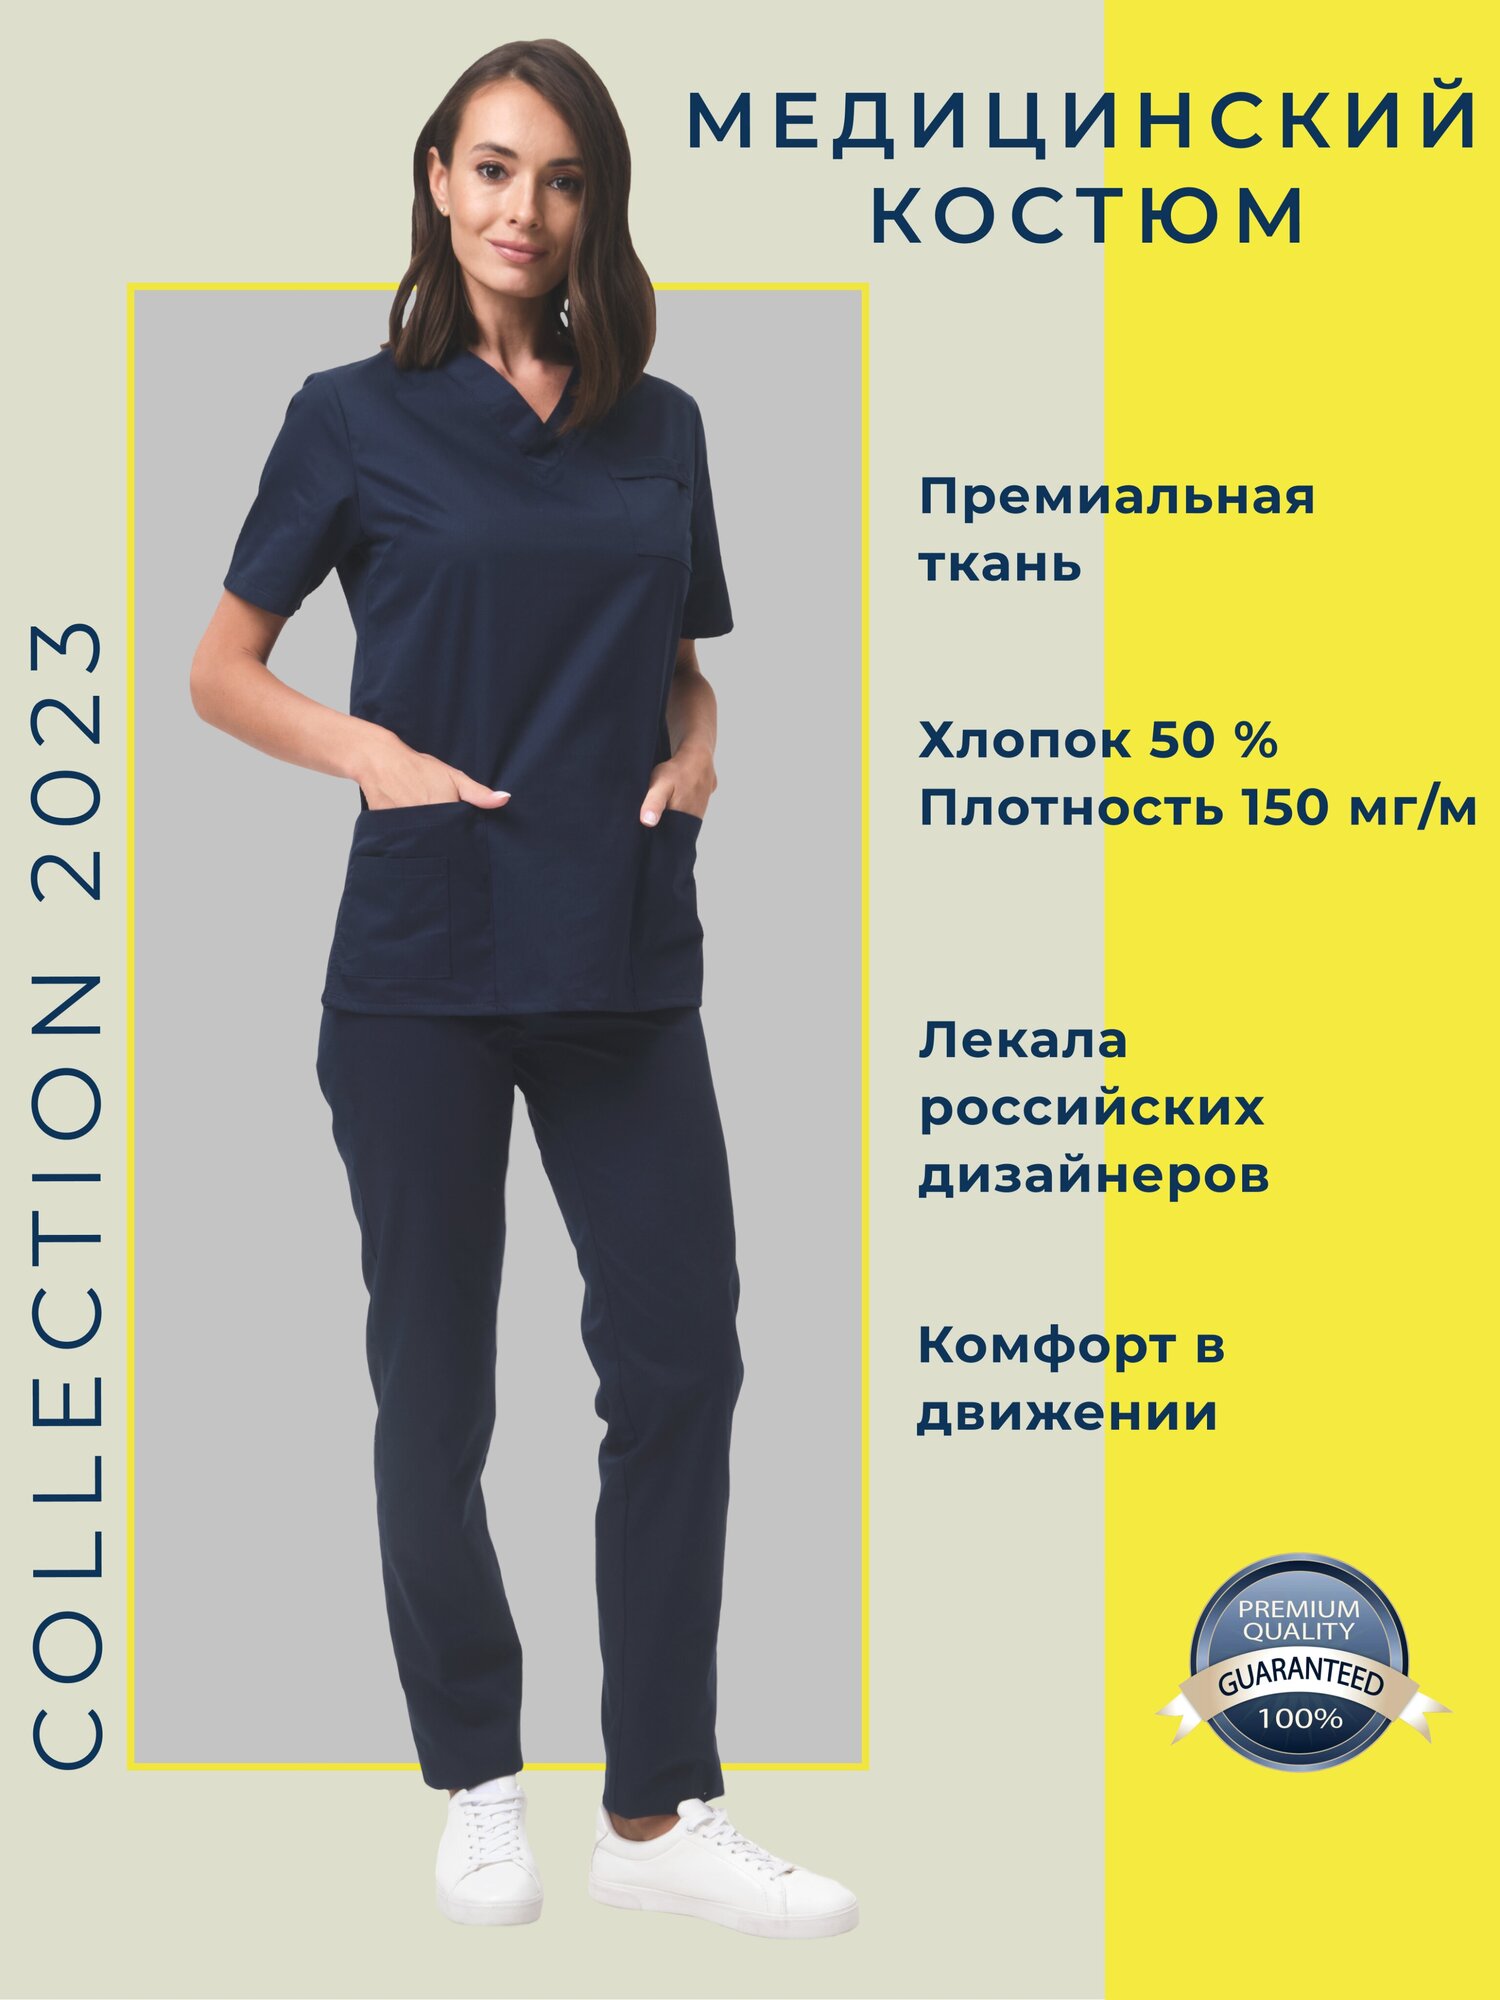 Костюм медицинский/медицинская одежда для женщин/женский медицинский костюм/хирургический костюм